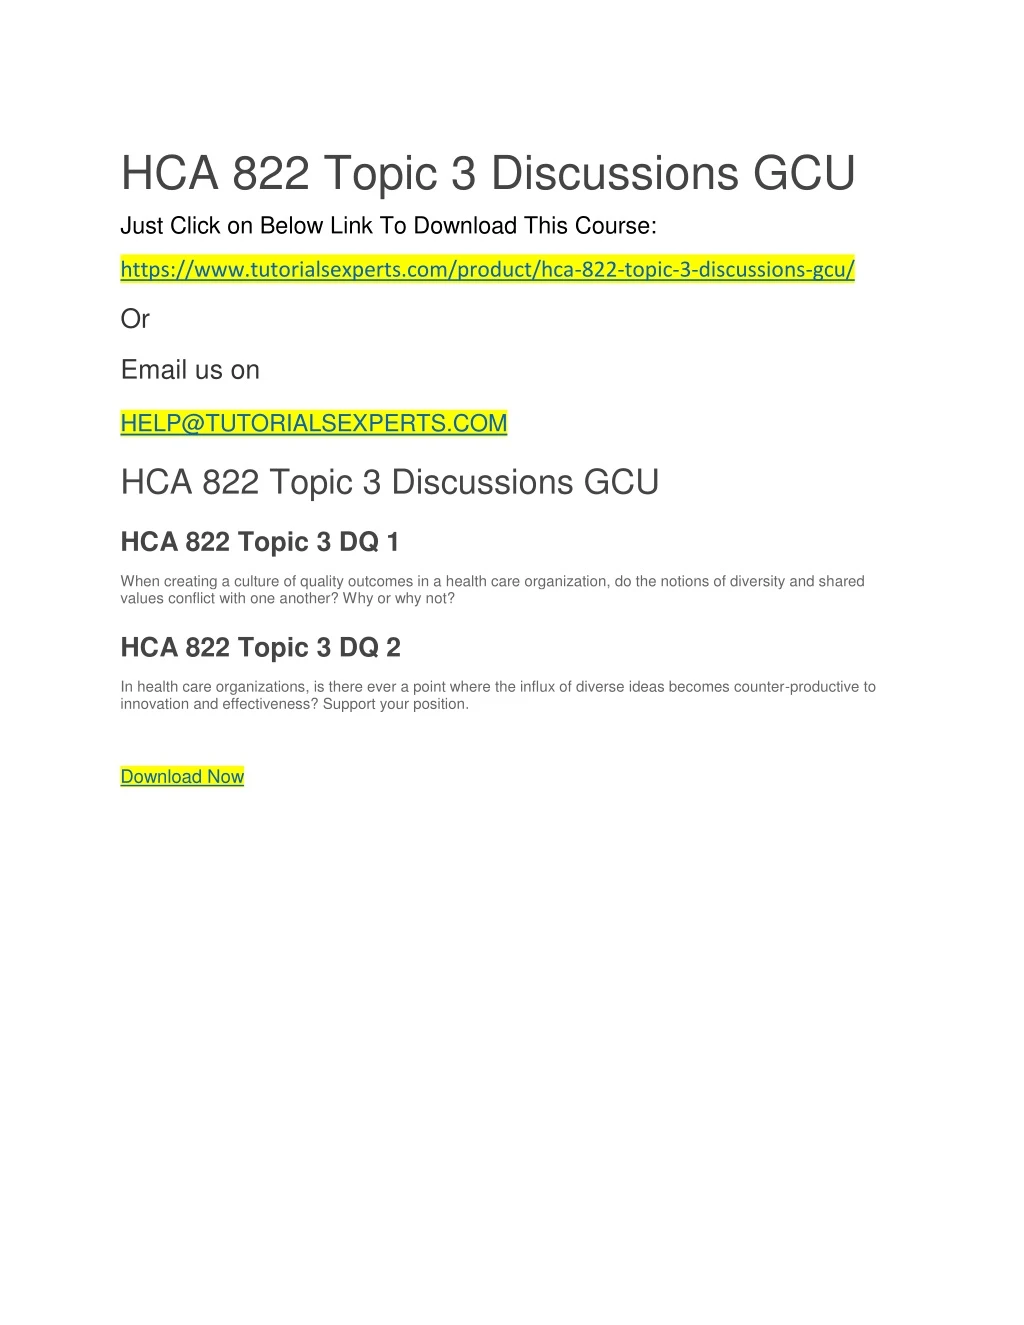 hca 822 topic 3 discussions gcu just click